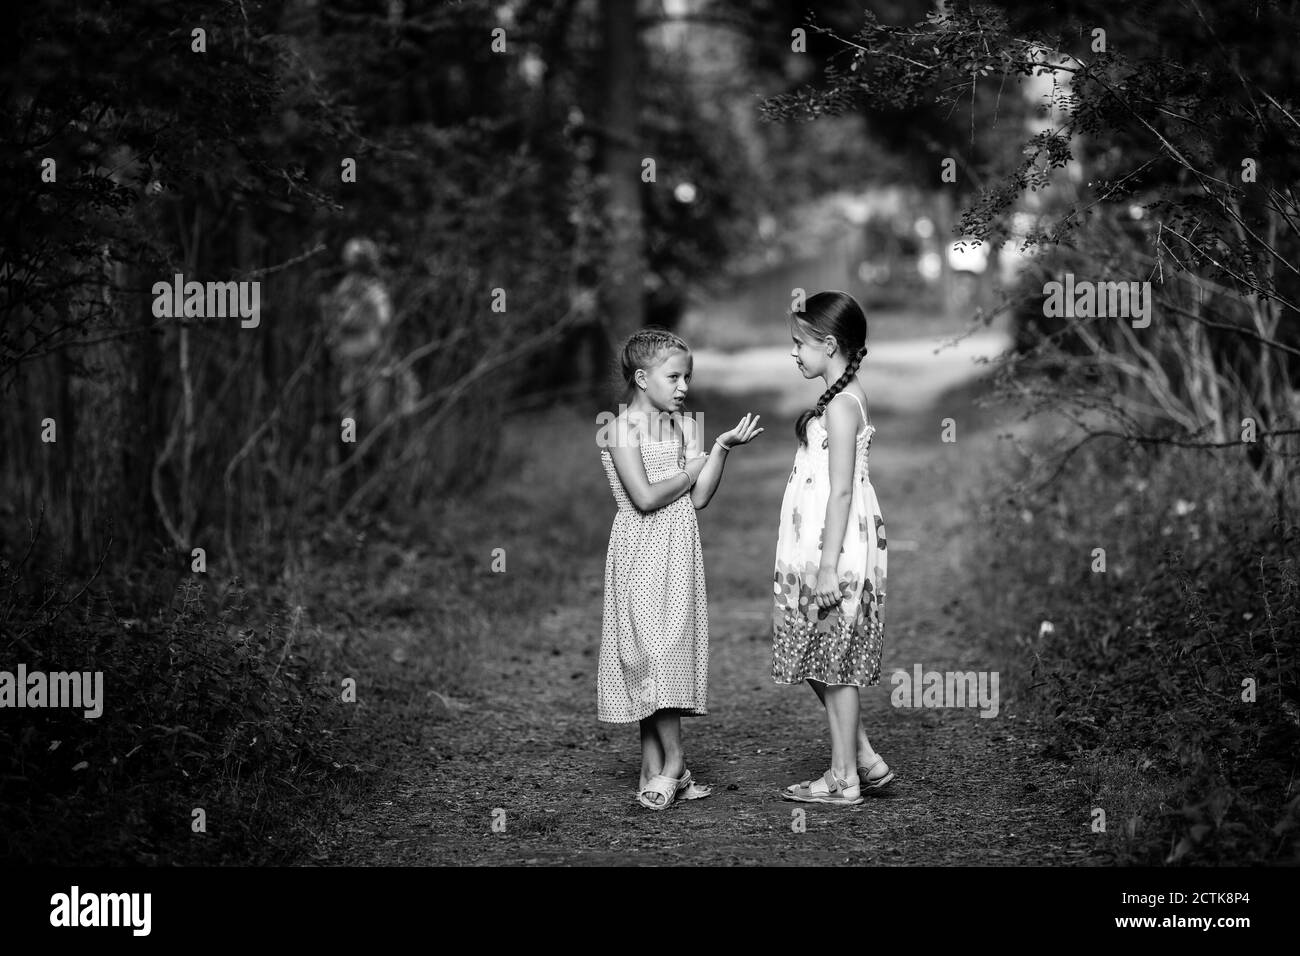 Kleine Freunde unterhalten sich aufgeregt im Park stehend. Schwarzweiß-Fotografie. Stockfoto